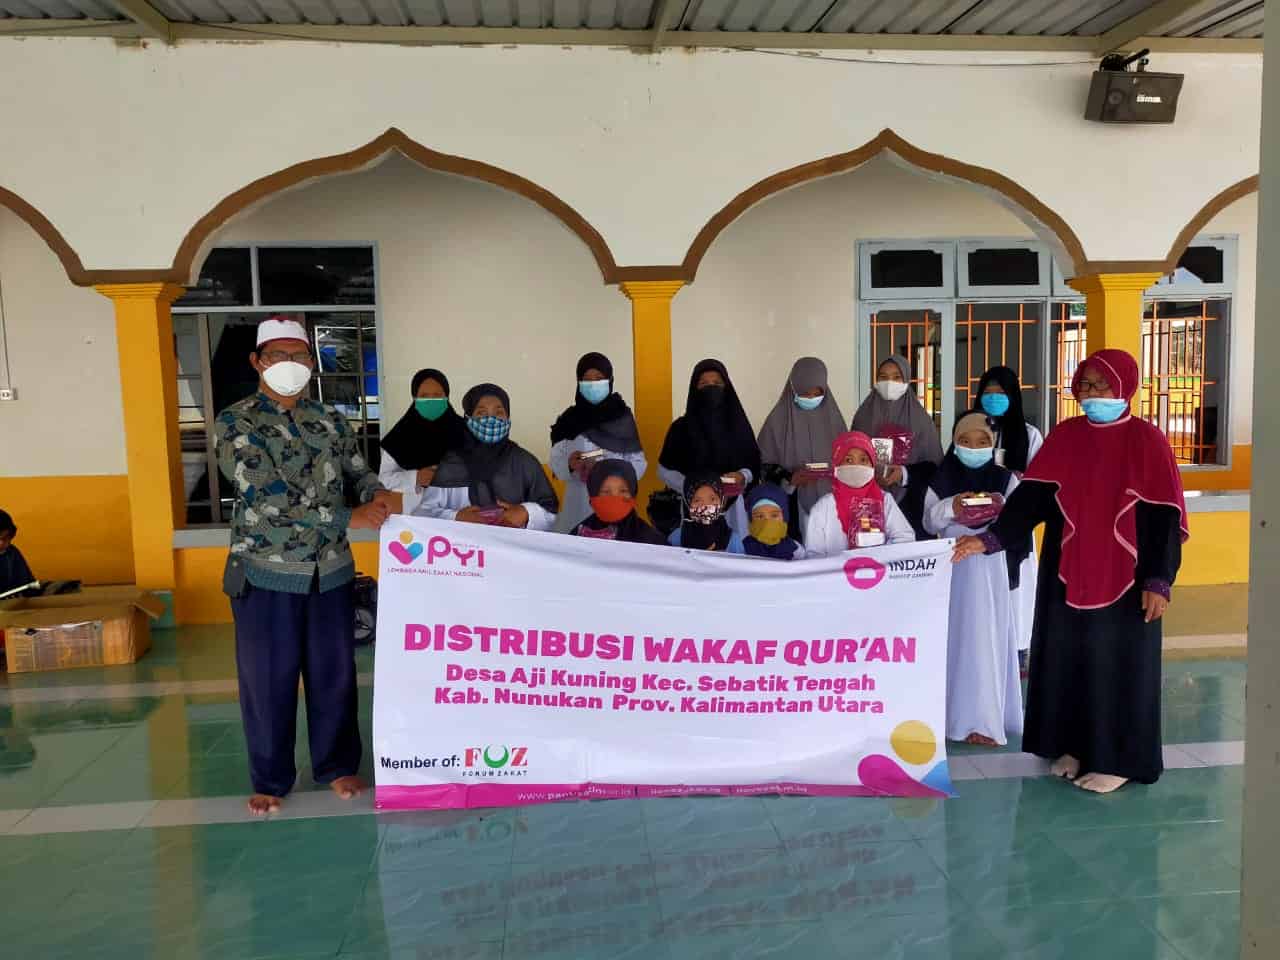 Penyaluran Jilbab dan Alquran Wakaf Di Kalimantan Utara